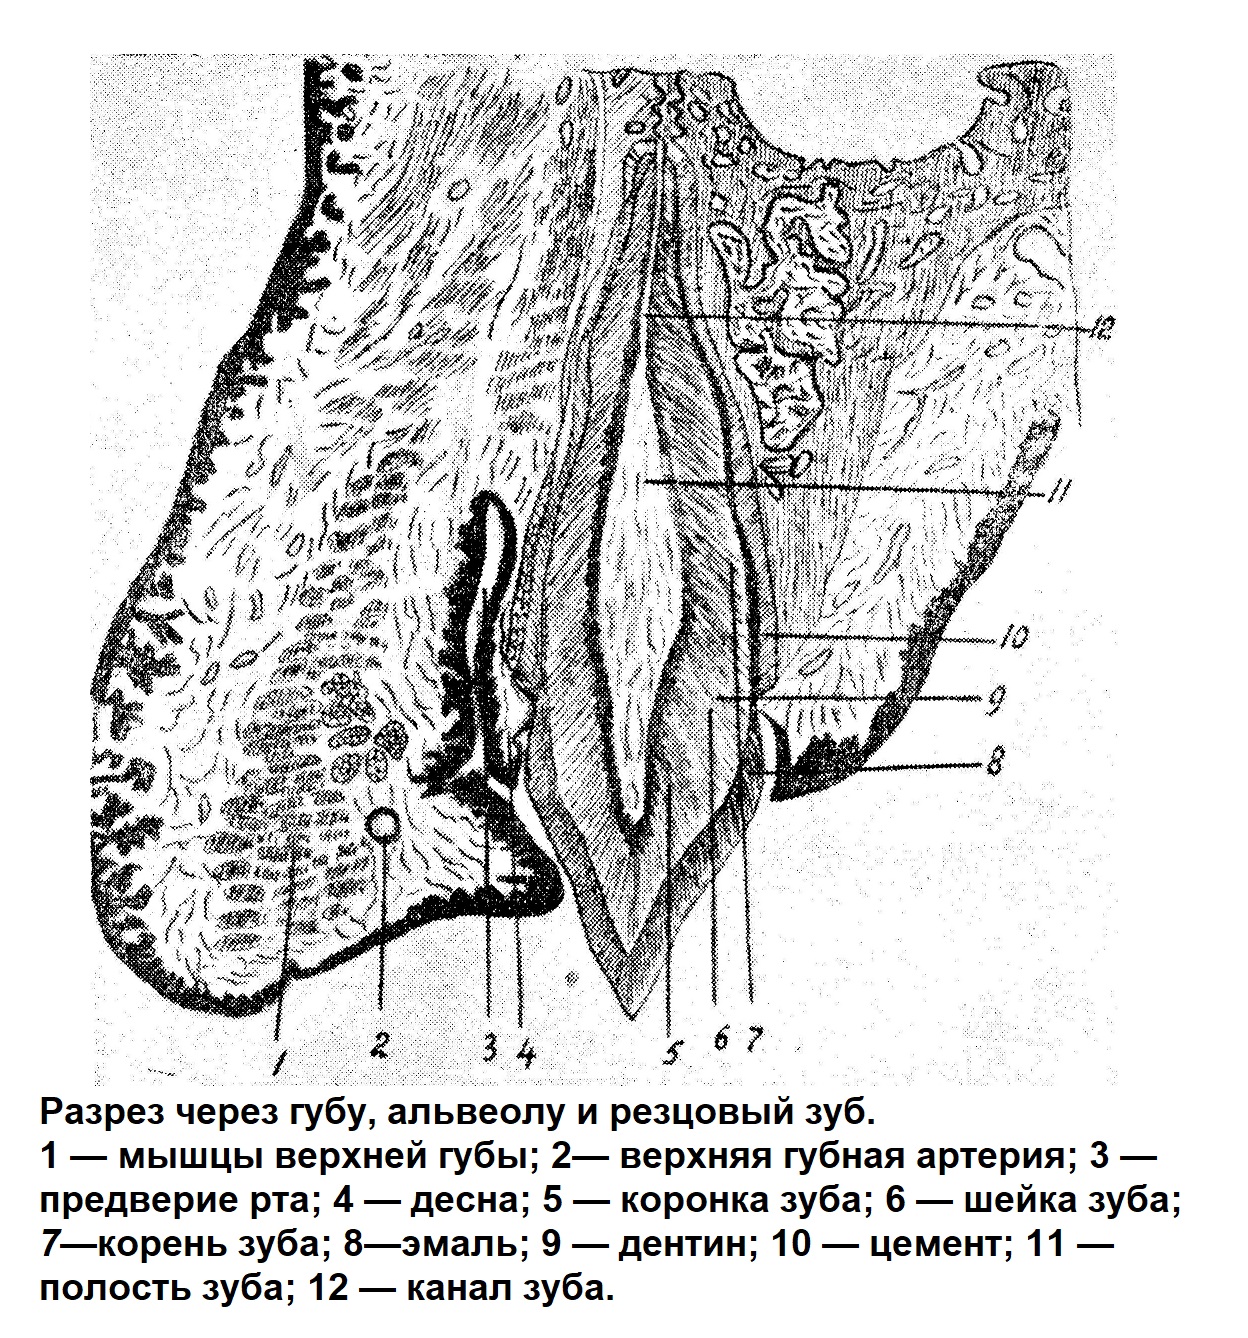 Разрез через губу, альвеолу и резцовый зуб